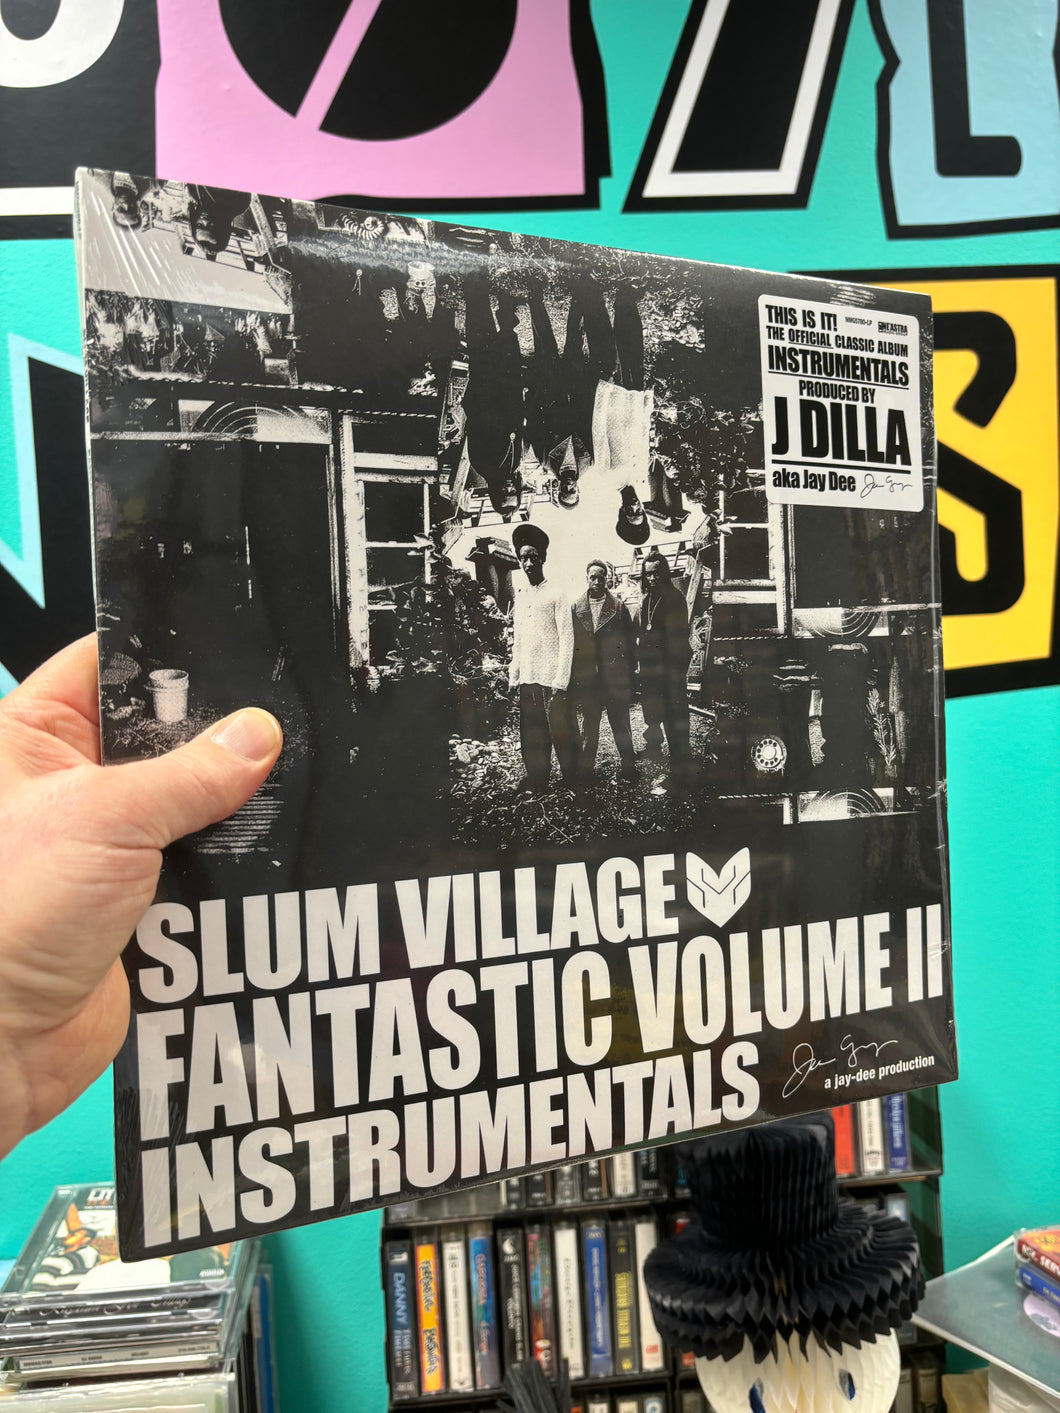 Slum Village: Fantastic Vol. 2 Instrumentals, 2LP, reissue, Dark Green, US 2024